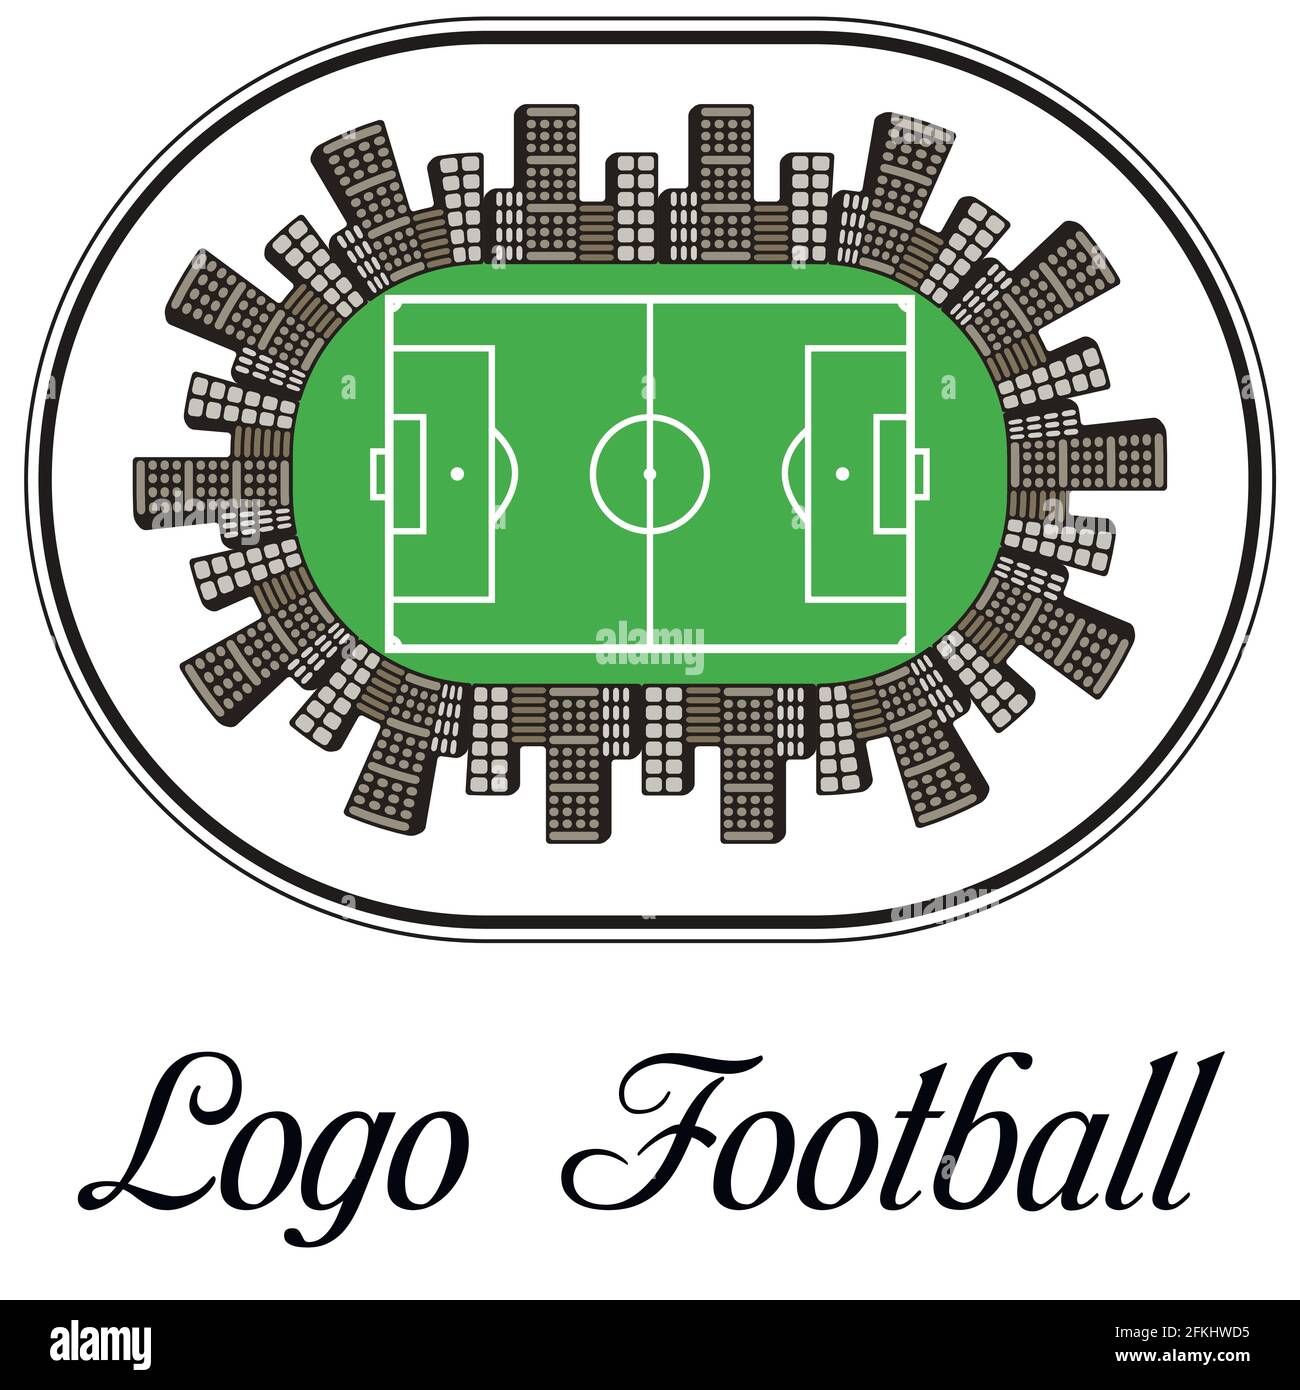 Vektorgrafik für ein Logo des Fußballs, bestehend aus Stock Vektor